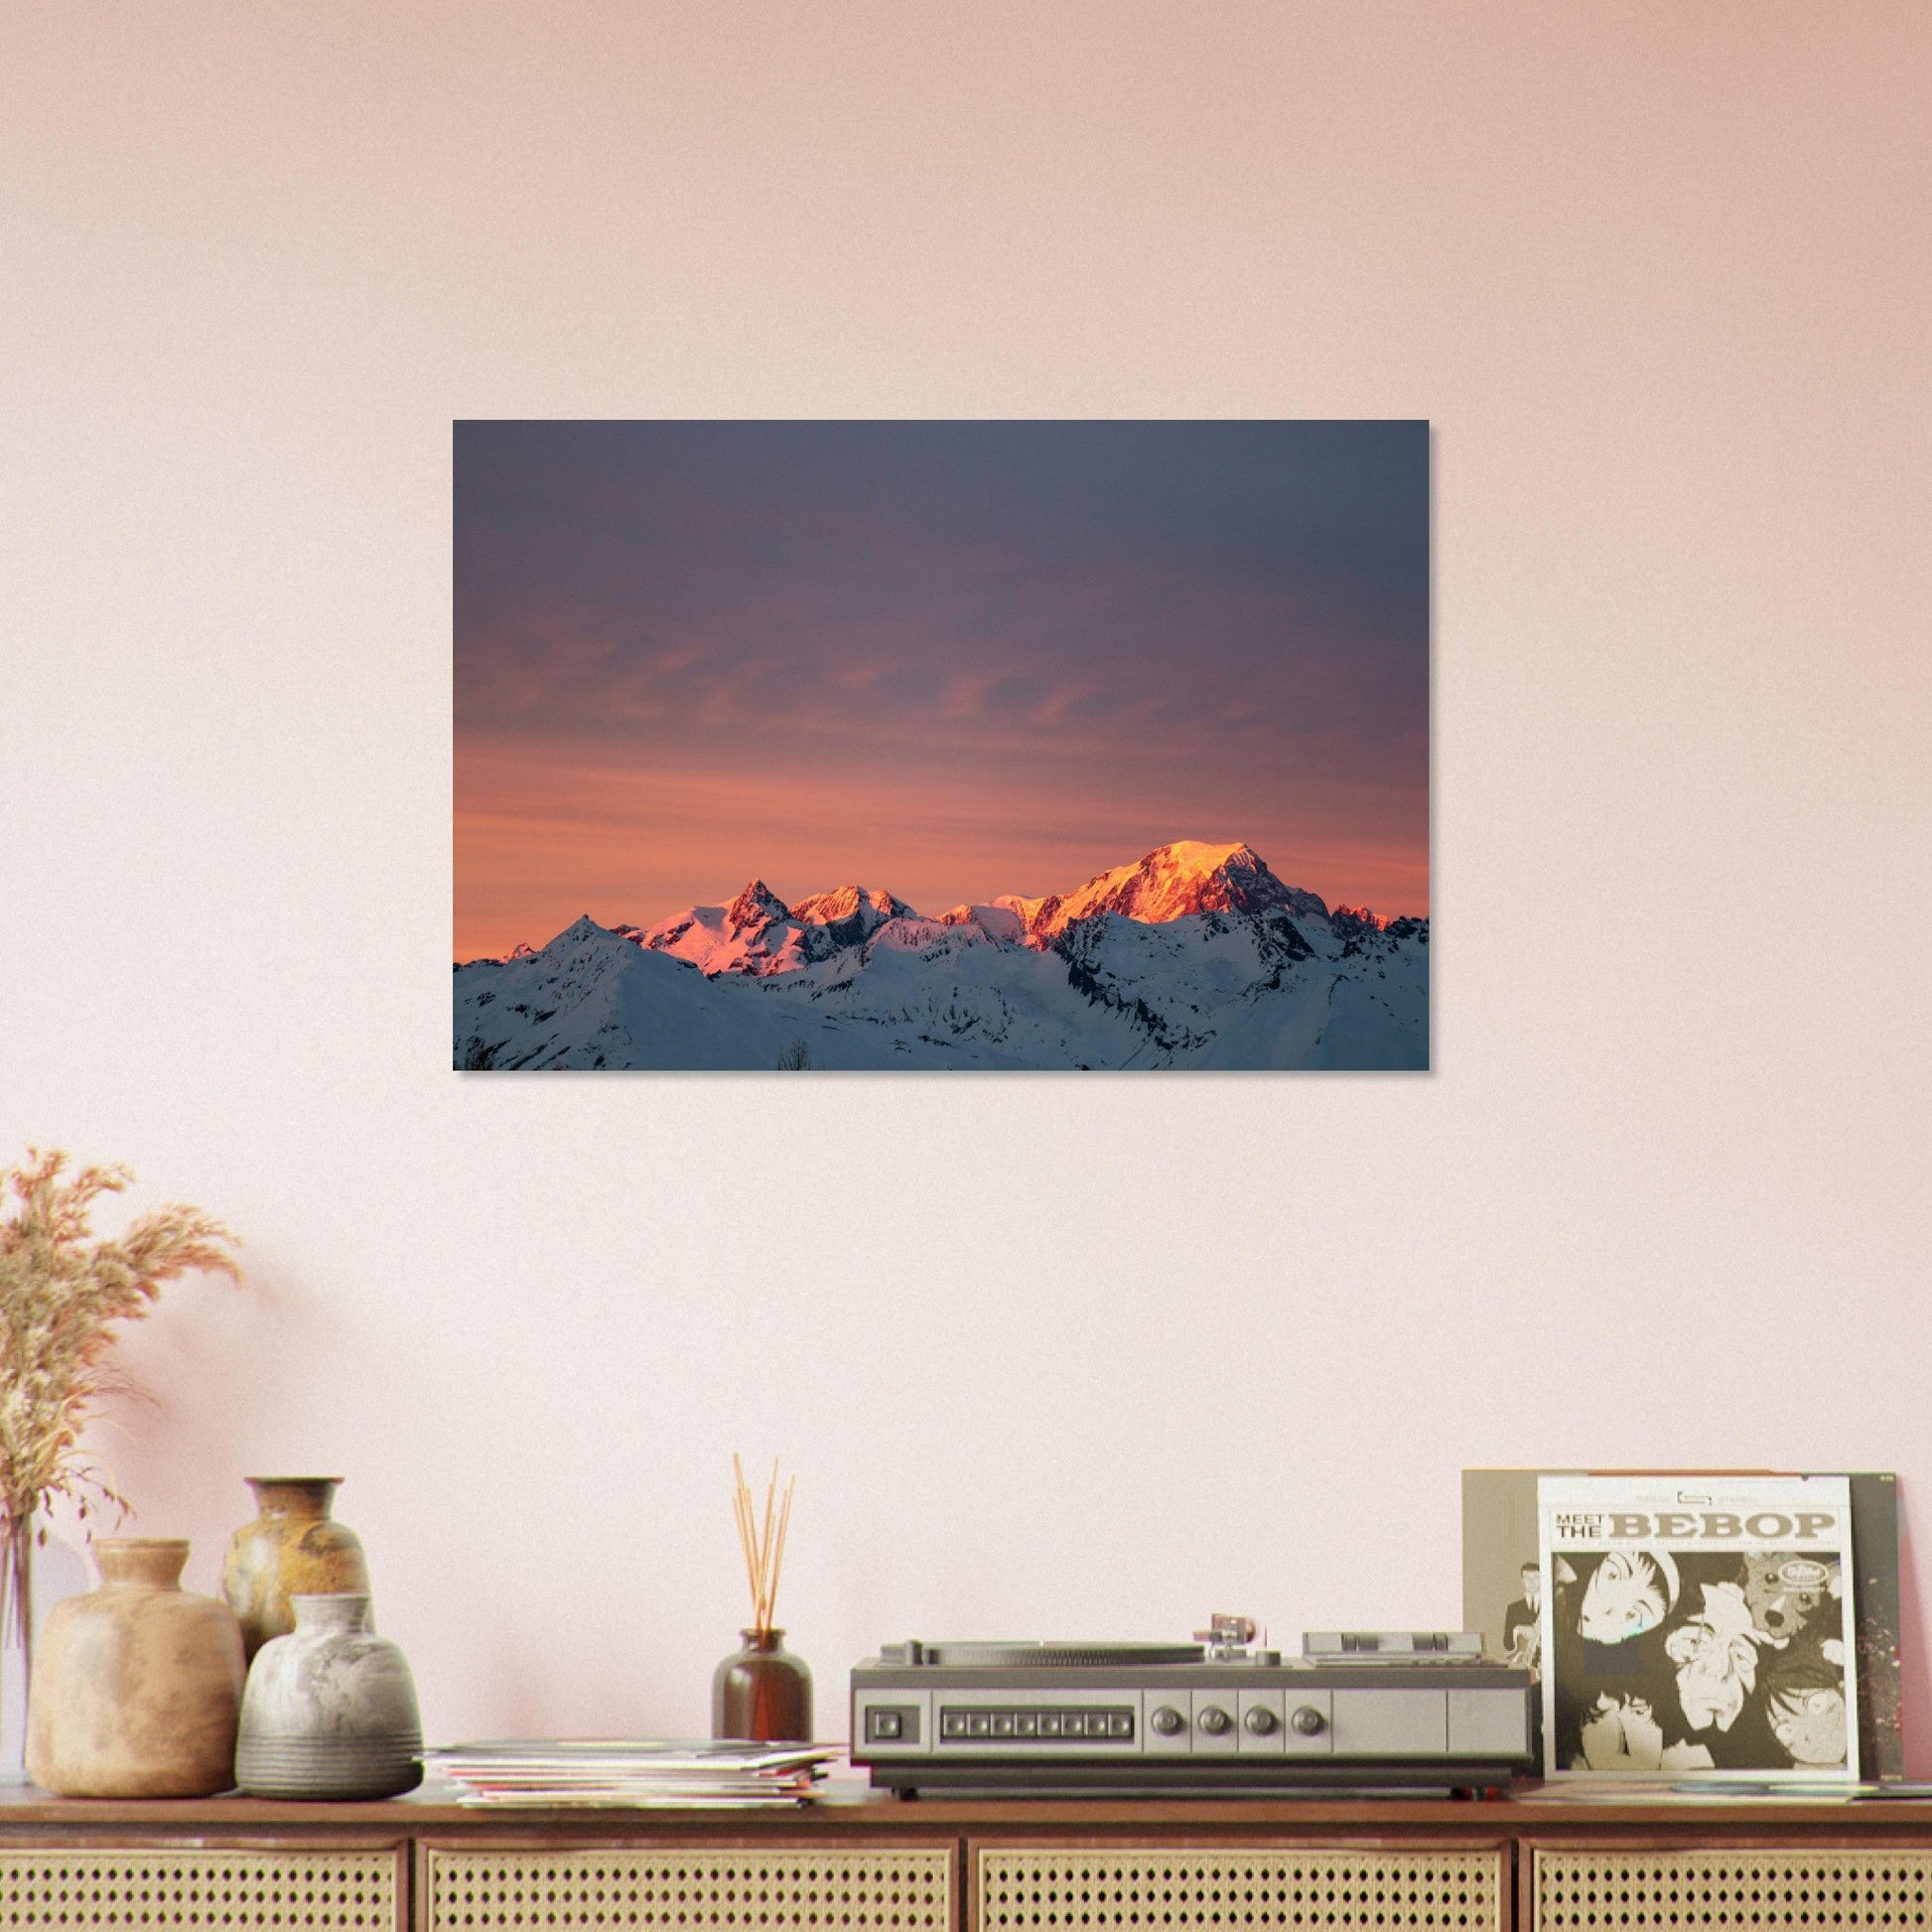 Vente Photo d'un coucher de soleil sur les Arcs, Bourg-Saint-Maurice, Vanoise - Tableau photo alu montagne